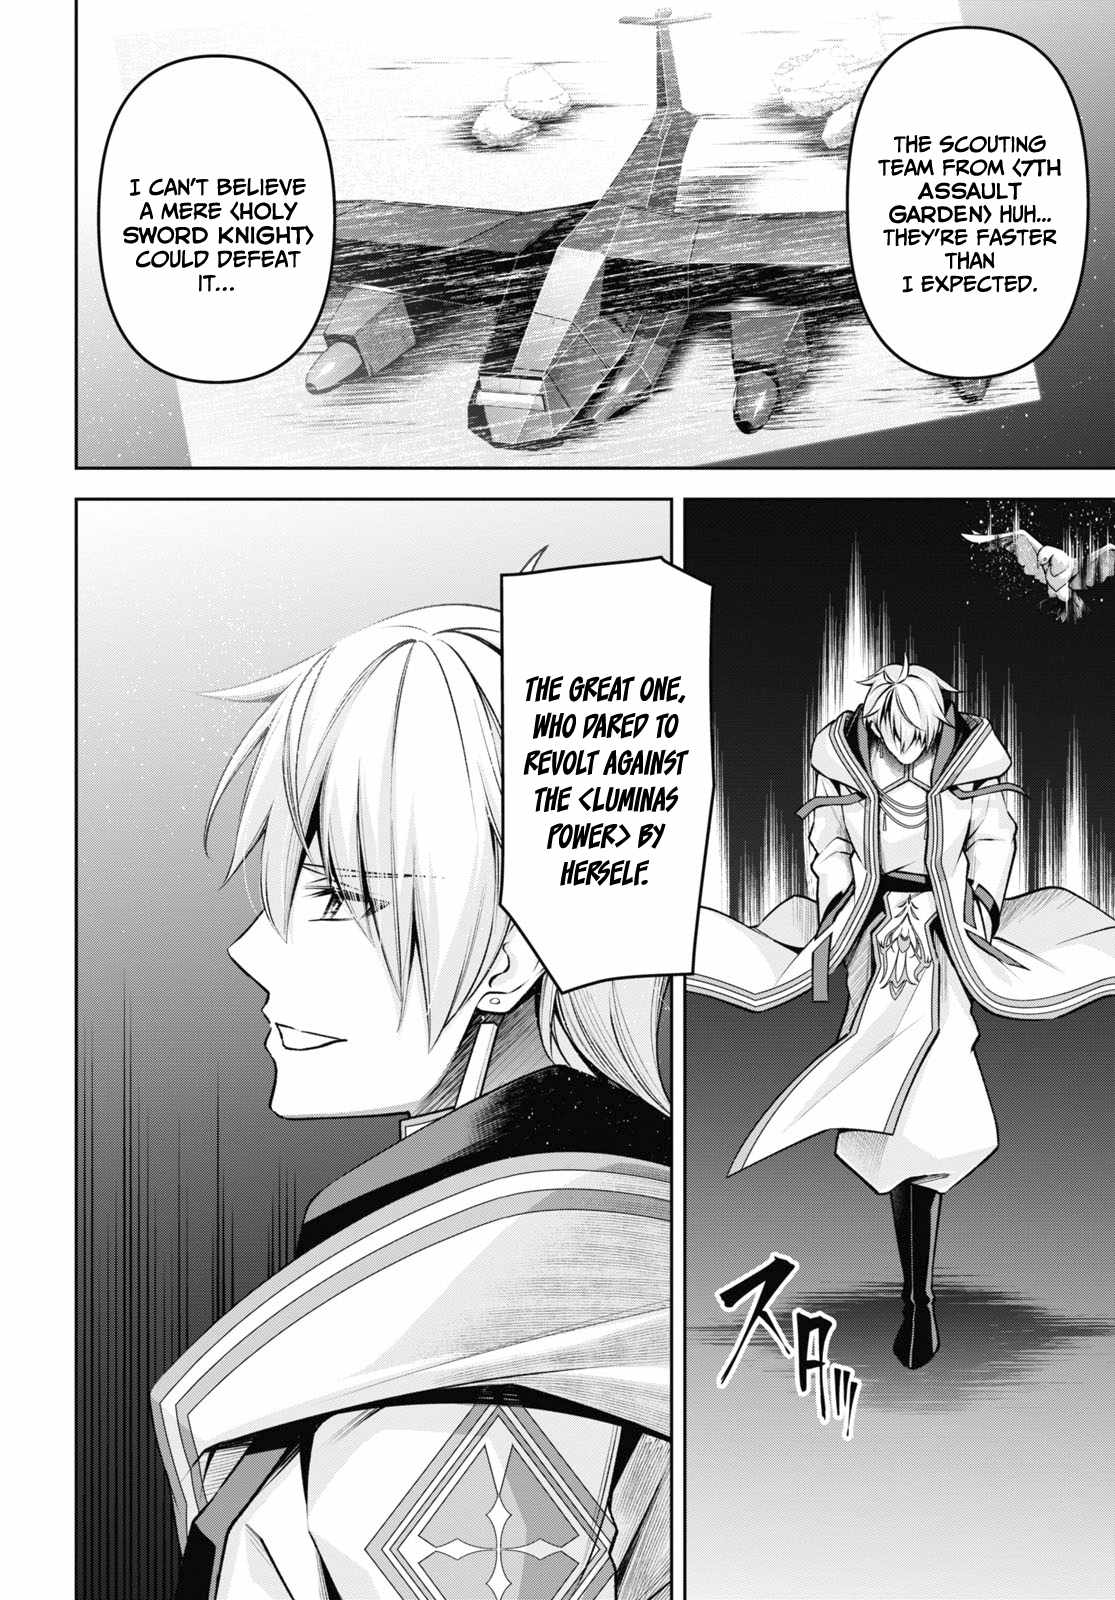 Demon's Sword Master Of Excalibur School - 26 page 25-00597d77